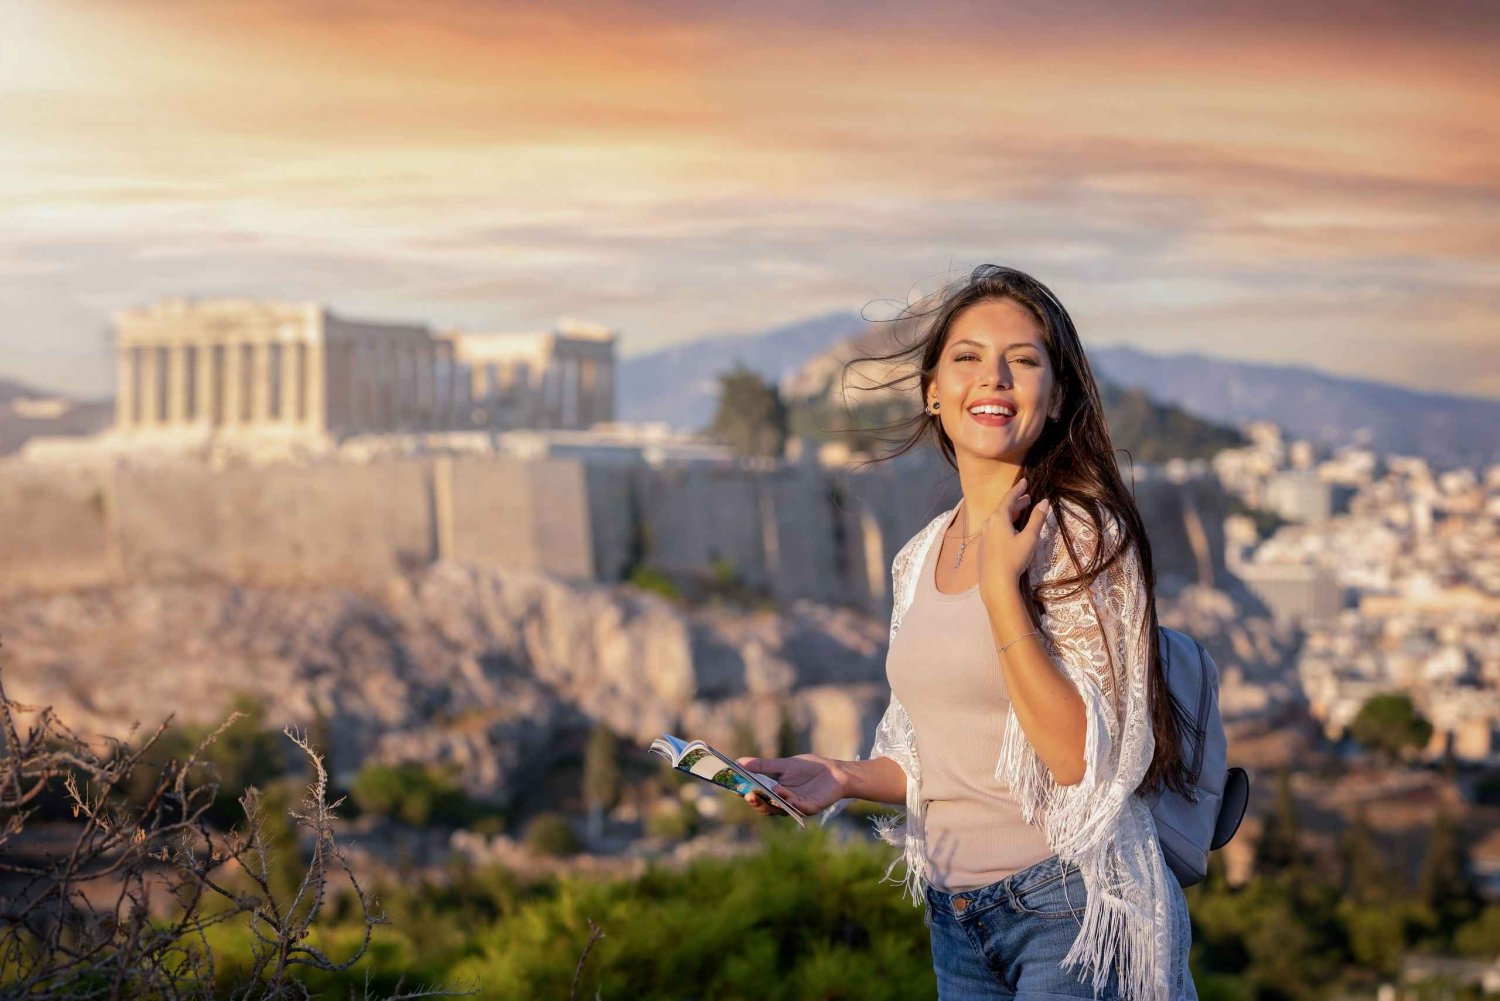 Asombrosa Atenas: Capturando Recuerdos entre las Vistas de la Acrópolis